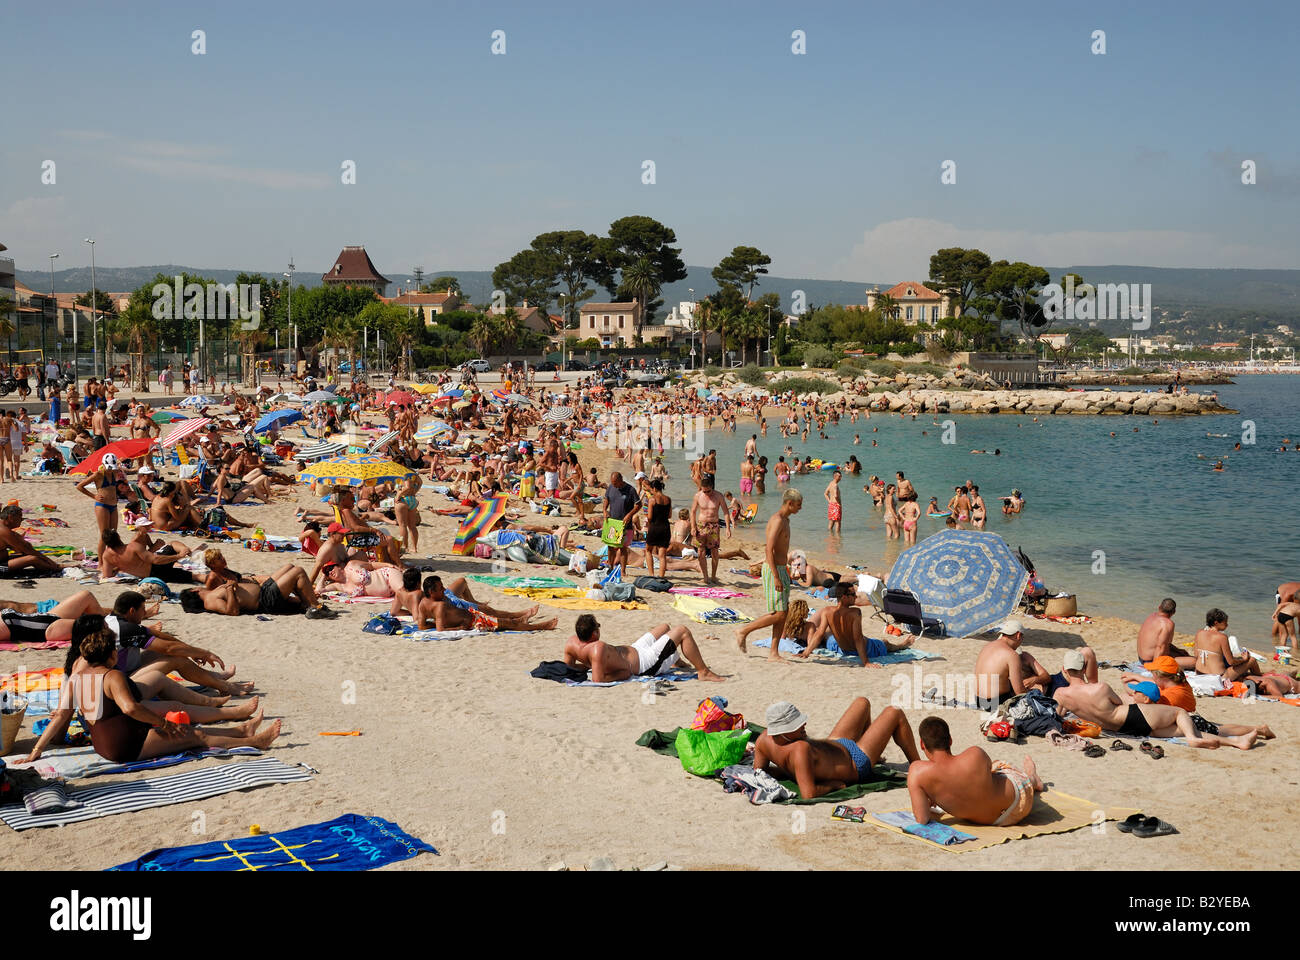 La vita in spiaggia a La Ciotat, Francia meridionale Foto Stock